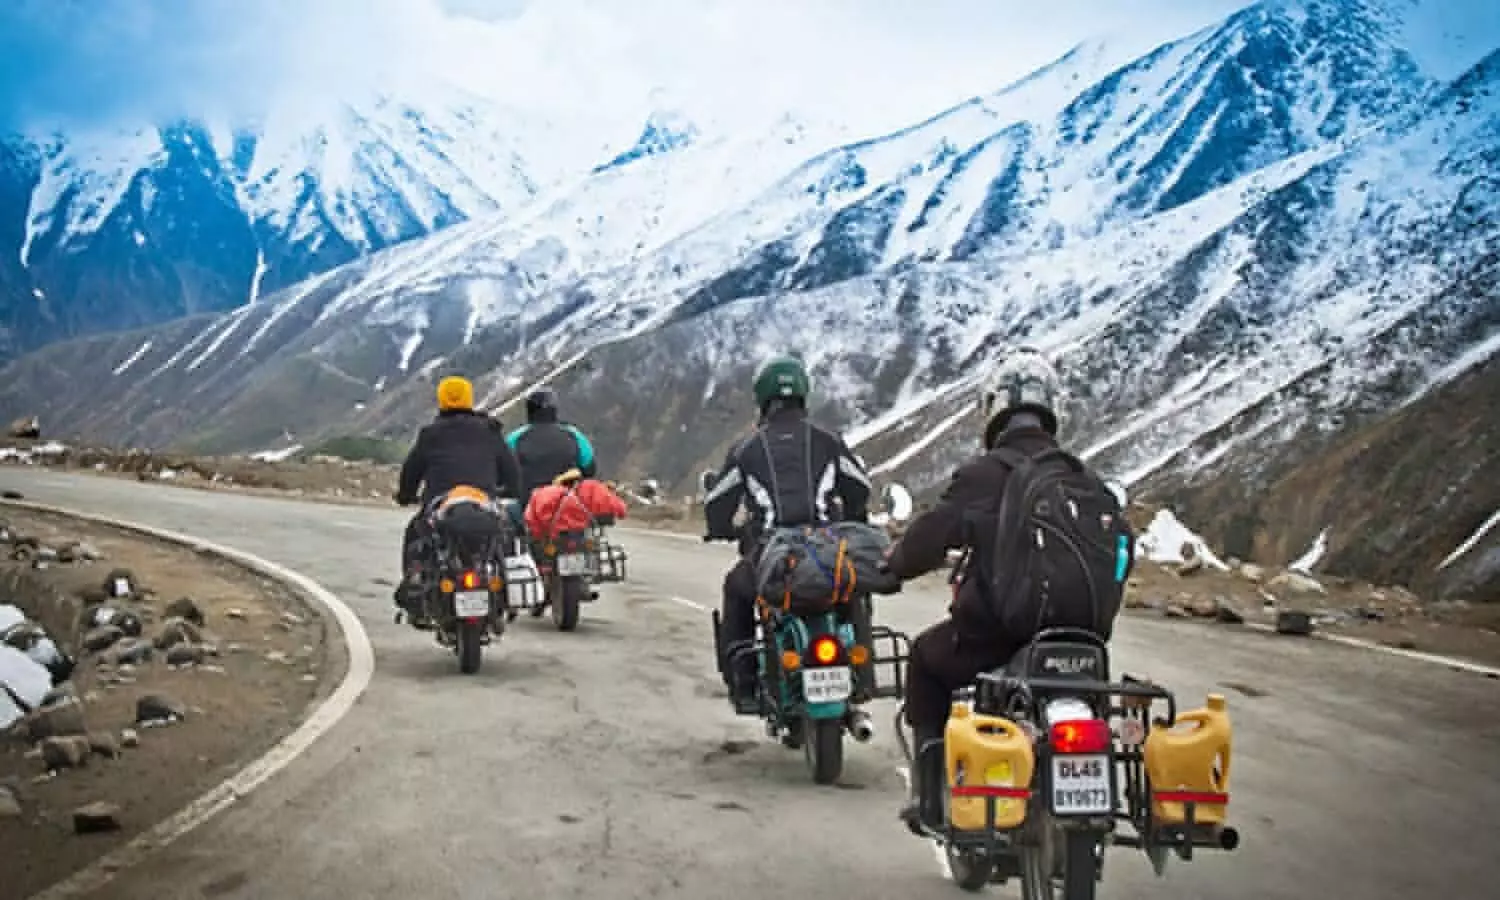 Leh Ladakh Bike Trip: बाइक से लेह-लद्दाख ट्रिप प्लान कर रहे हैं तो इन बातों पर जरूर ध्यान दें